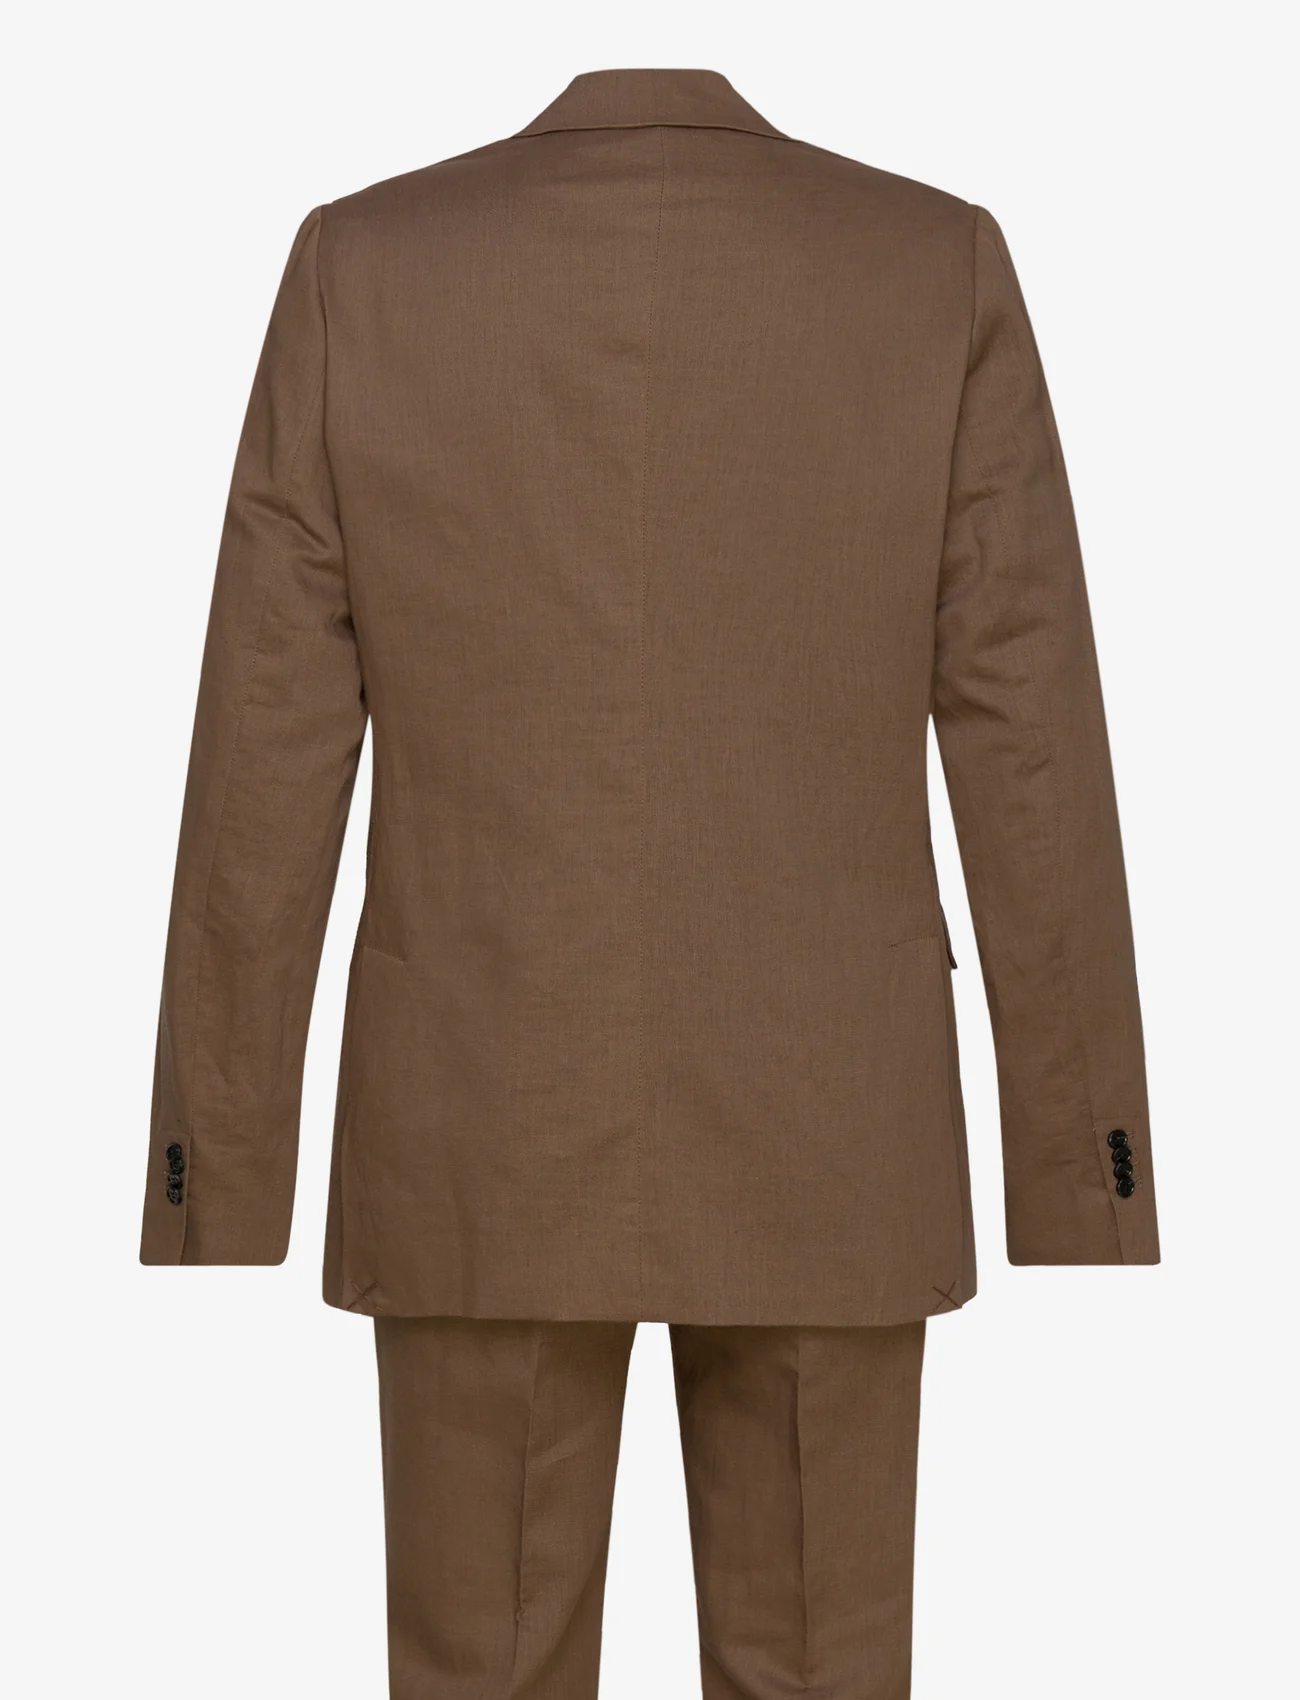 Bruuns Bazaar - LinoBBCarlAxel suit - kombinezony dwurzędowe - toffee - 1